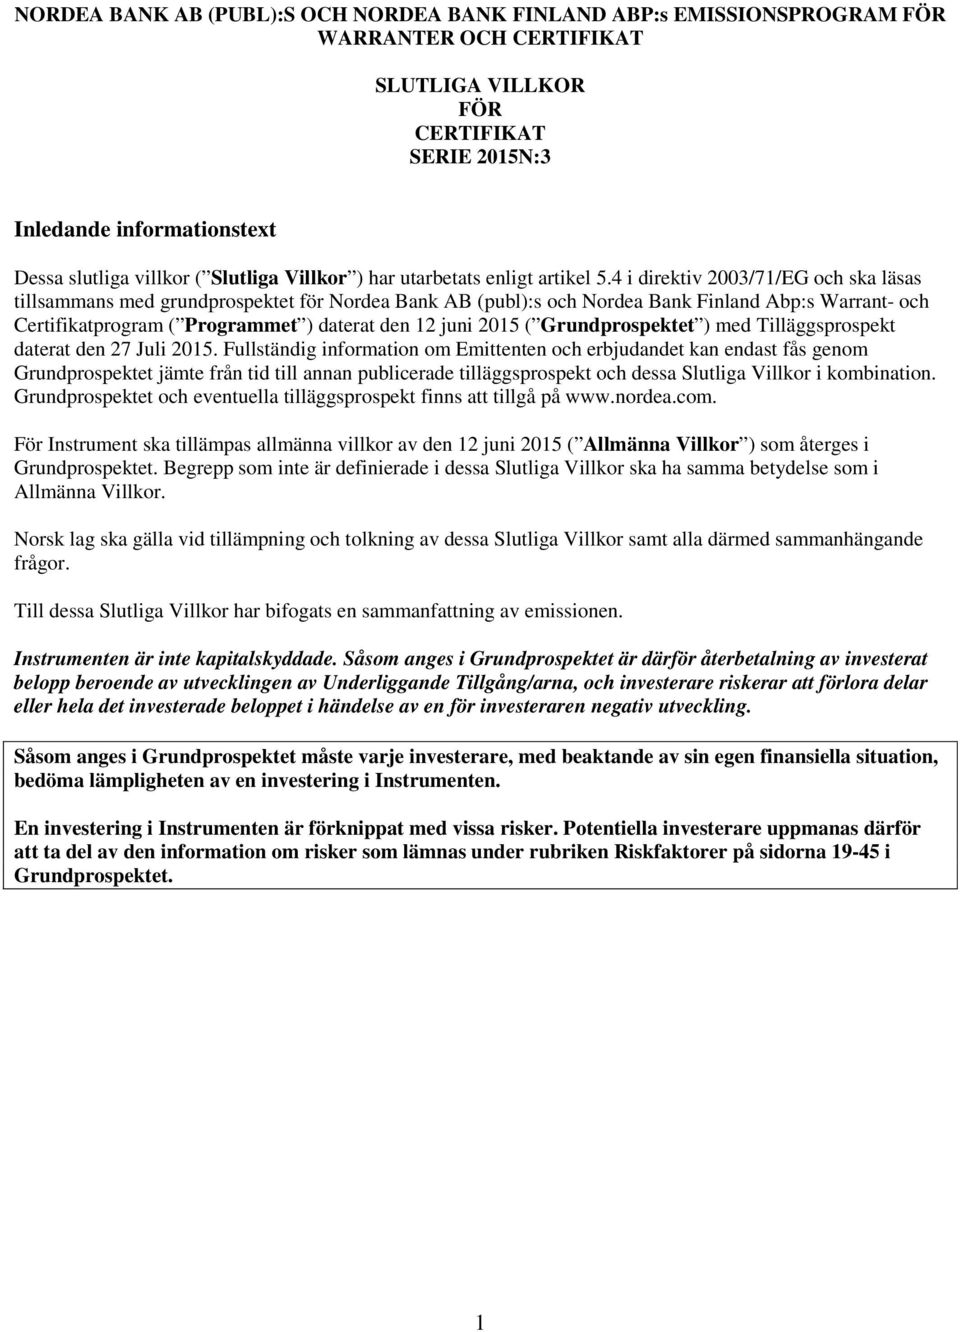 4 i direktiv 2003/71/EG och ska läsas tillsammans med grundprospektet för Nordea Bank AB (publ):s och Nordea Bank Finland Abp:s Warrant- och Certifikatprogram ( Programmet ) daterat den 12 juni 2015